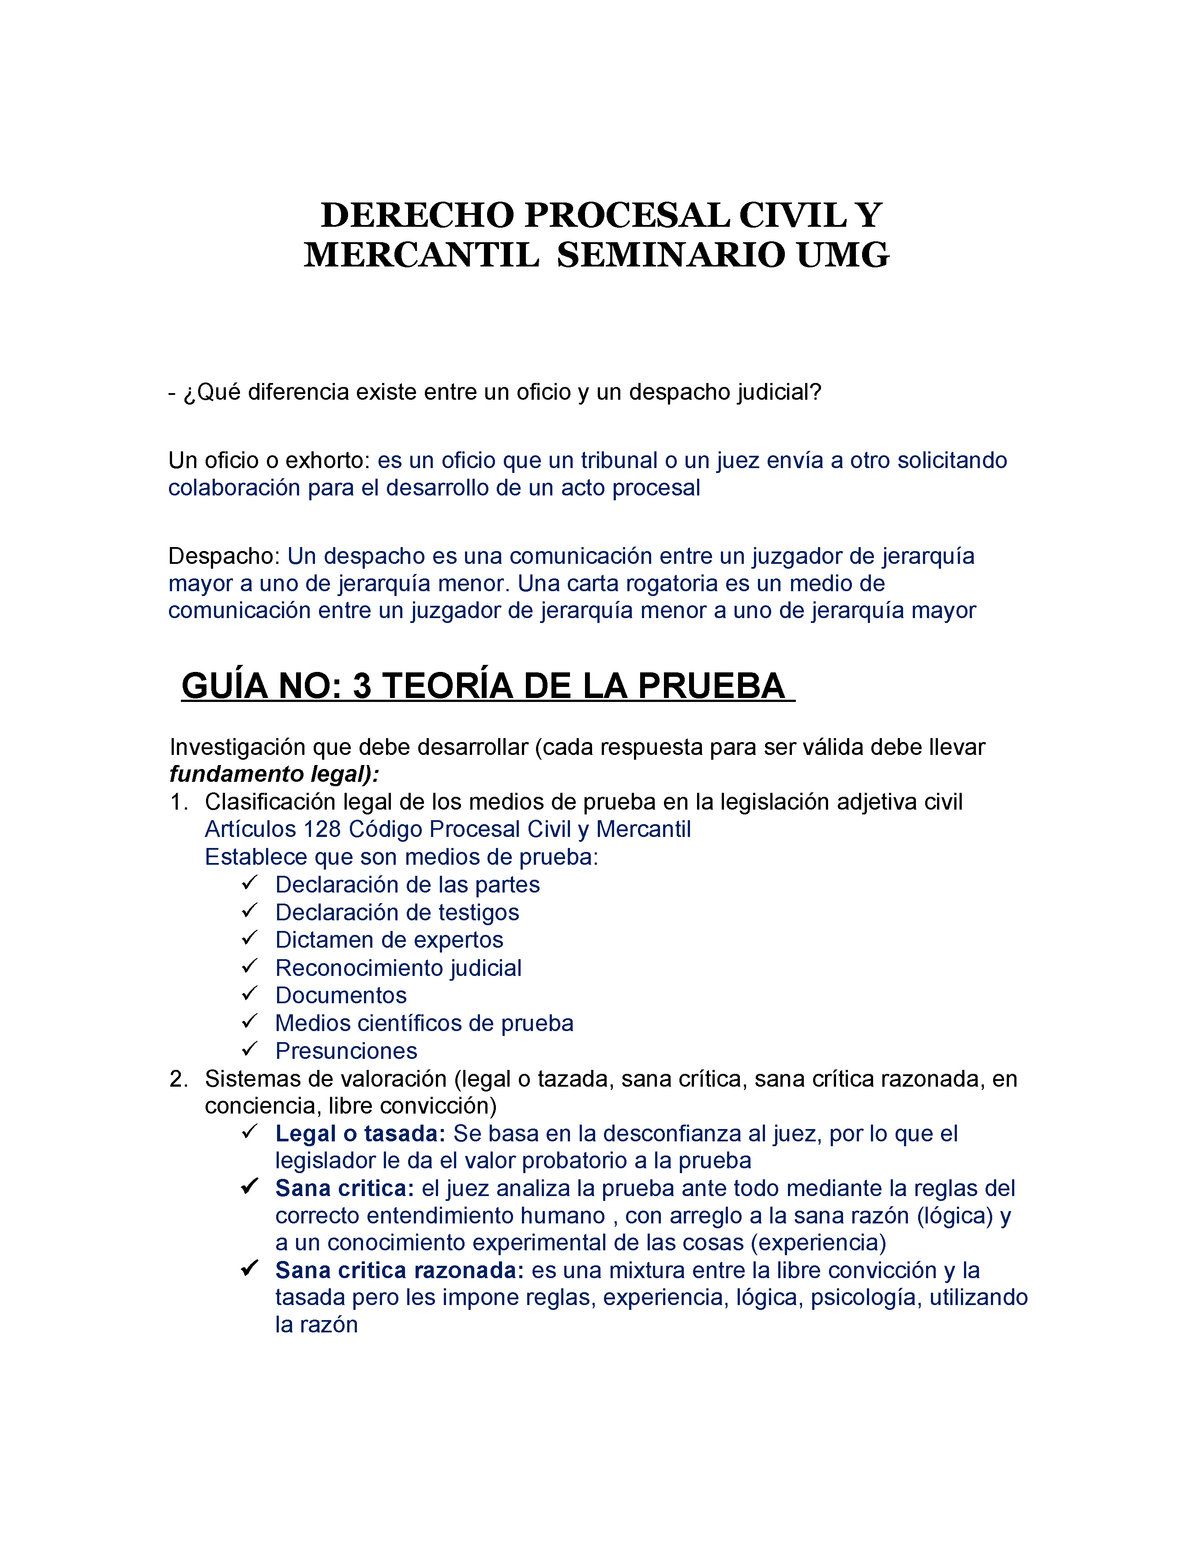 La Prueba Derecho Procesal Civil Y Mercantil DERECHO PROCESAL CIVIL Y MERCANTIL SEMINARIO UMG